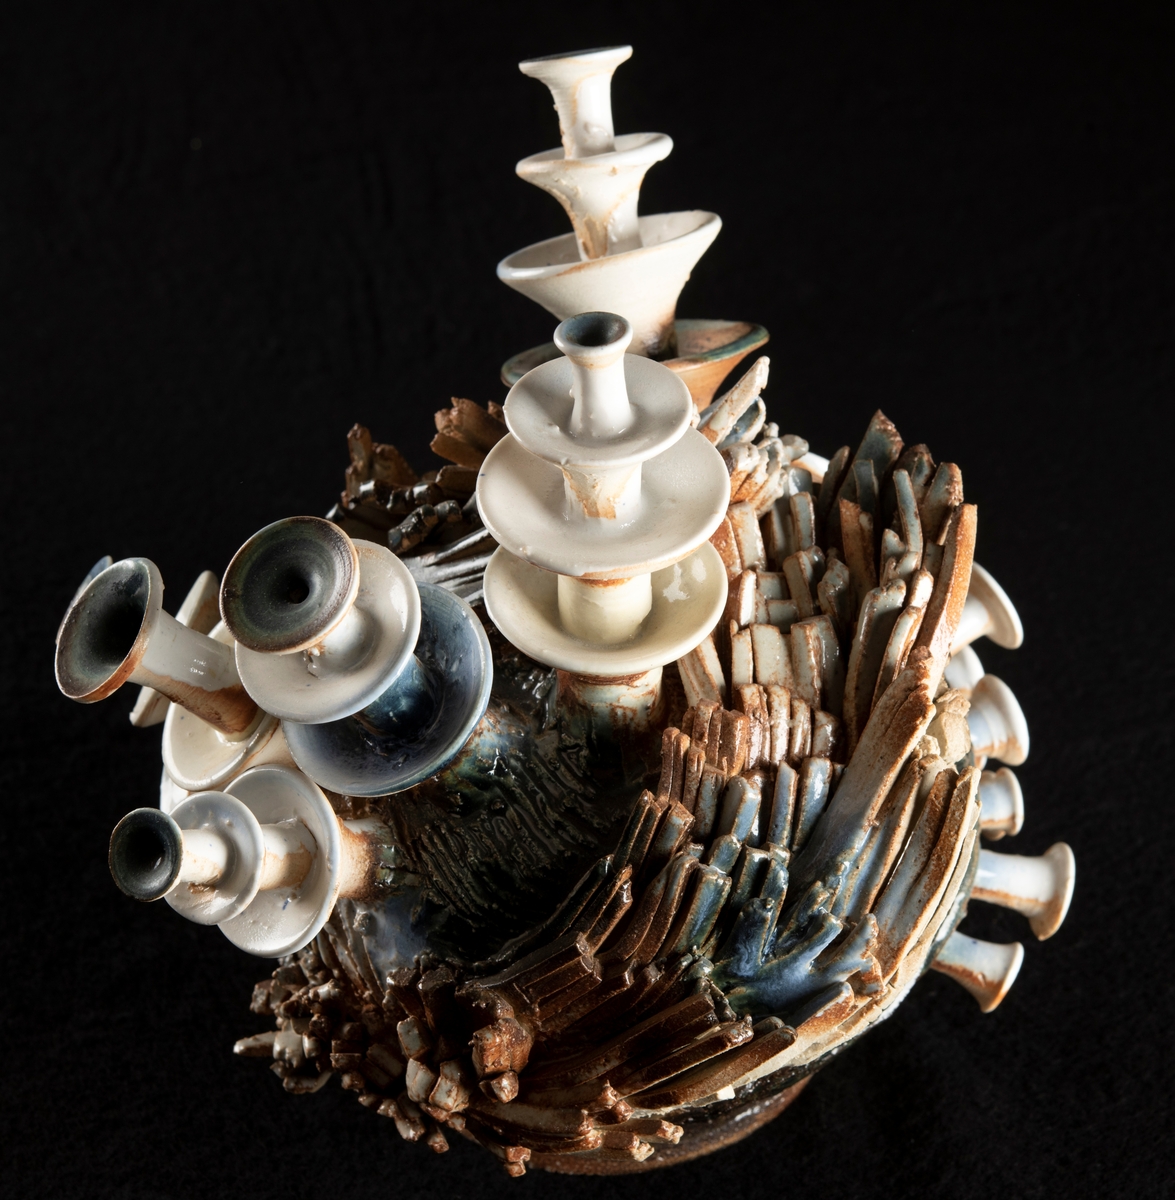 Stengodsobjekt bestående av ett antal trumpetliknande stjälkar som reser sig ur ett fundament bestående av strimlor av keramik lagda i en klump.